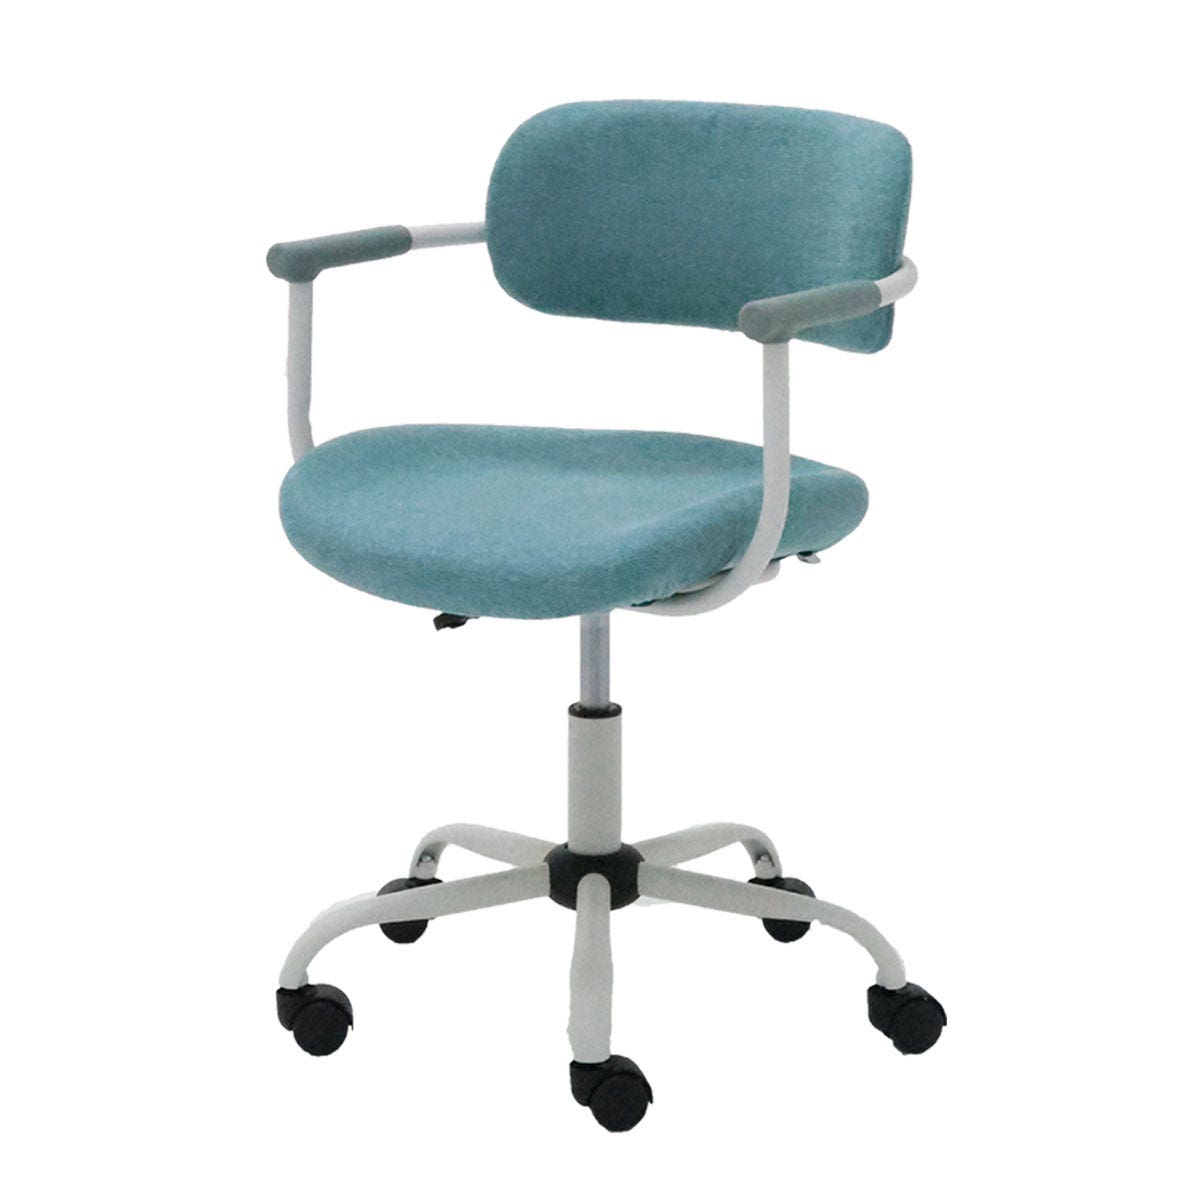 เก้าอี้สำนักงาน รุ่น Laminy สีเขียว01